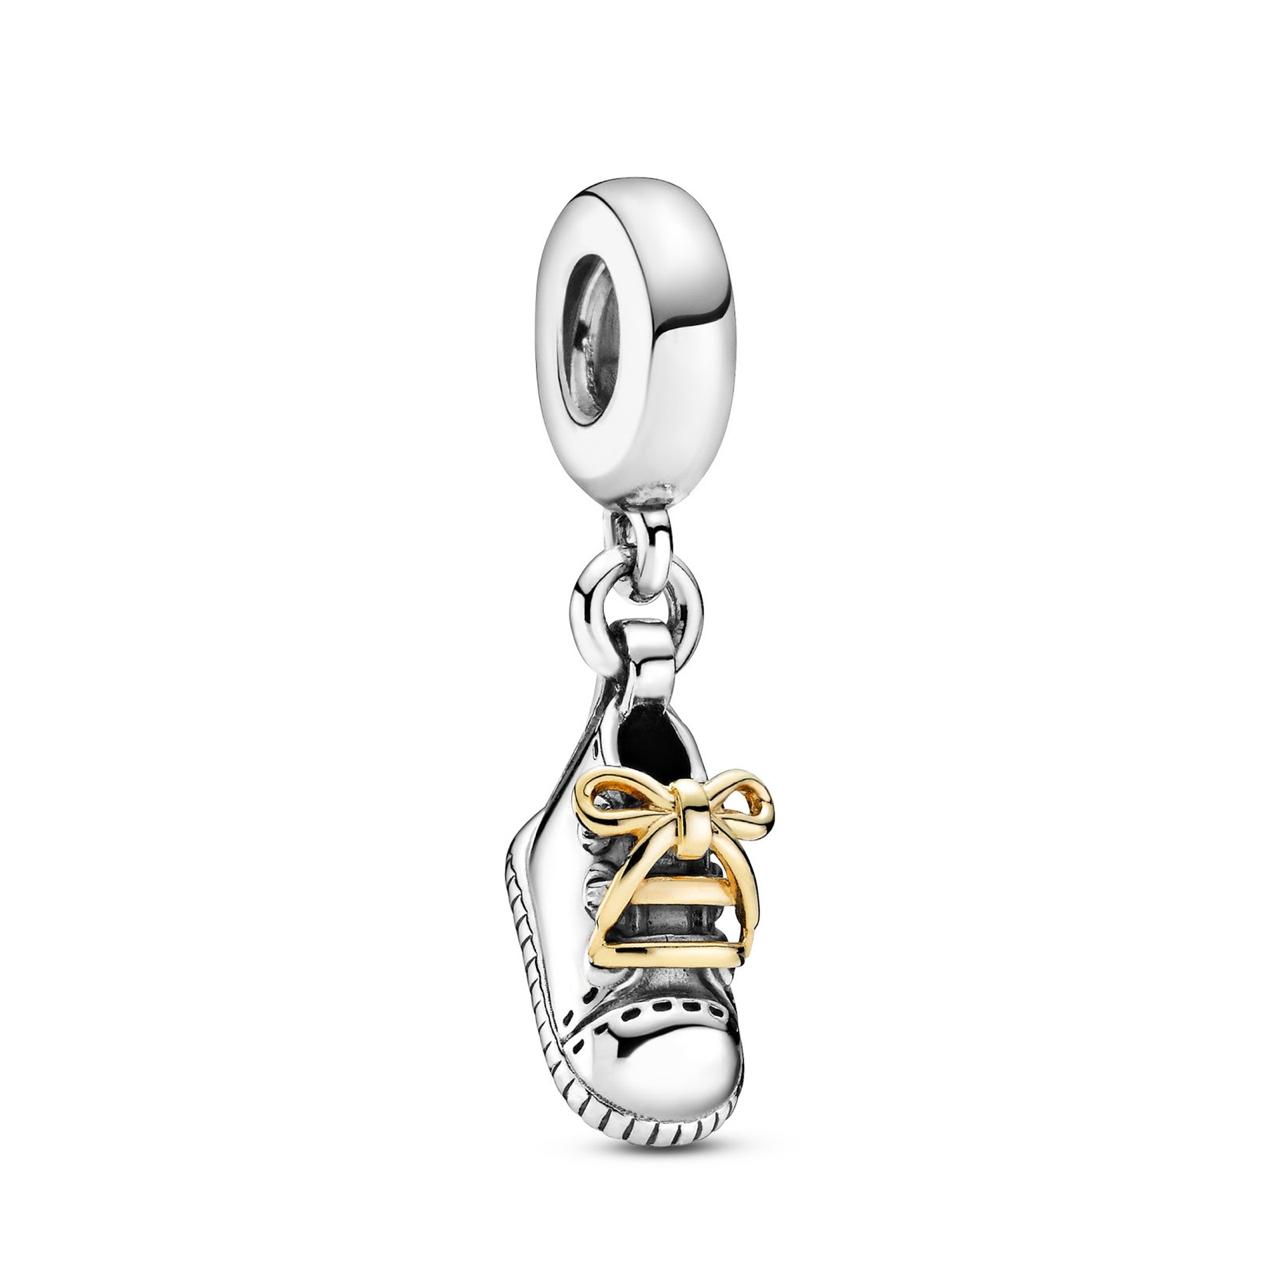 Идея для подарка: браслеты, кольца и подвески в осенней коллекции Pandora 